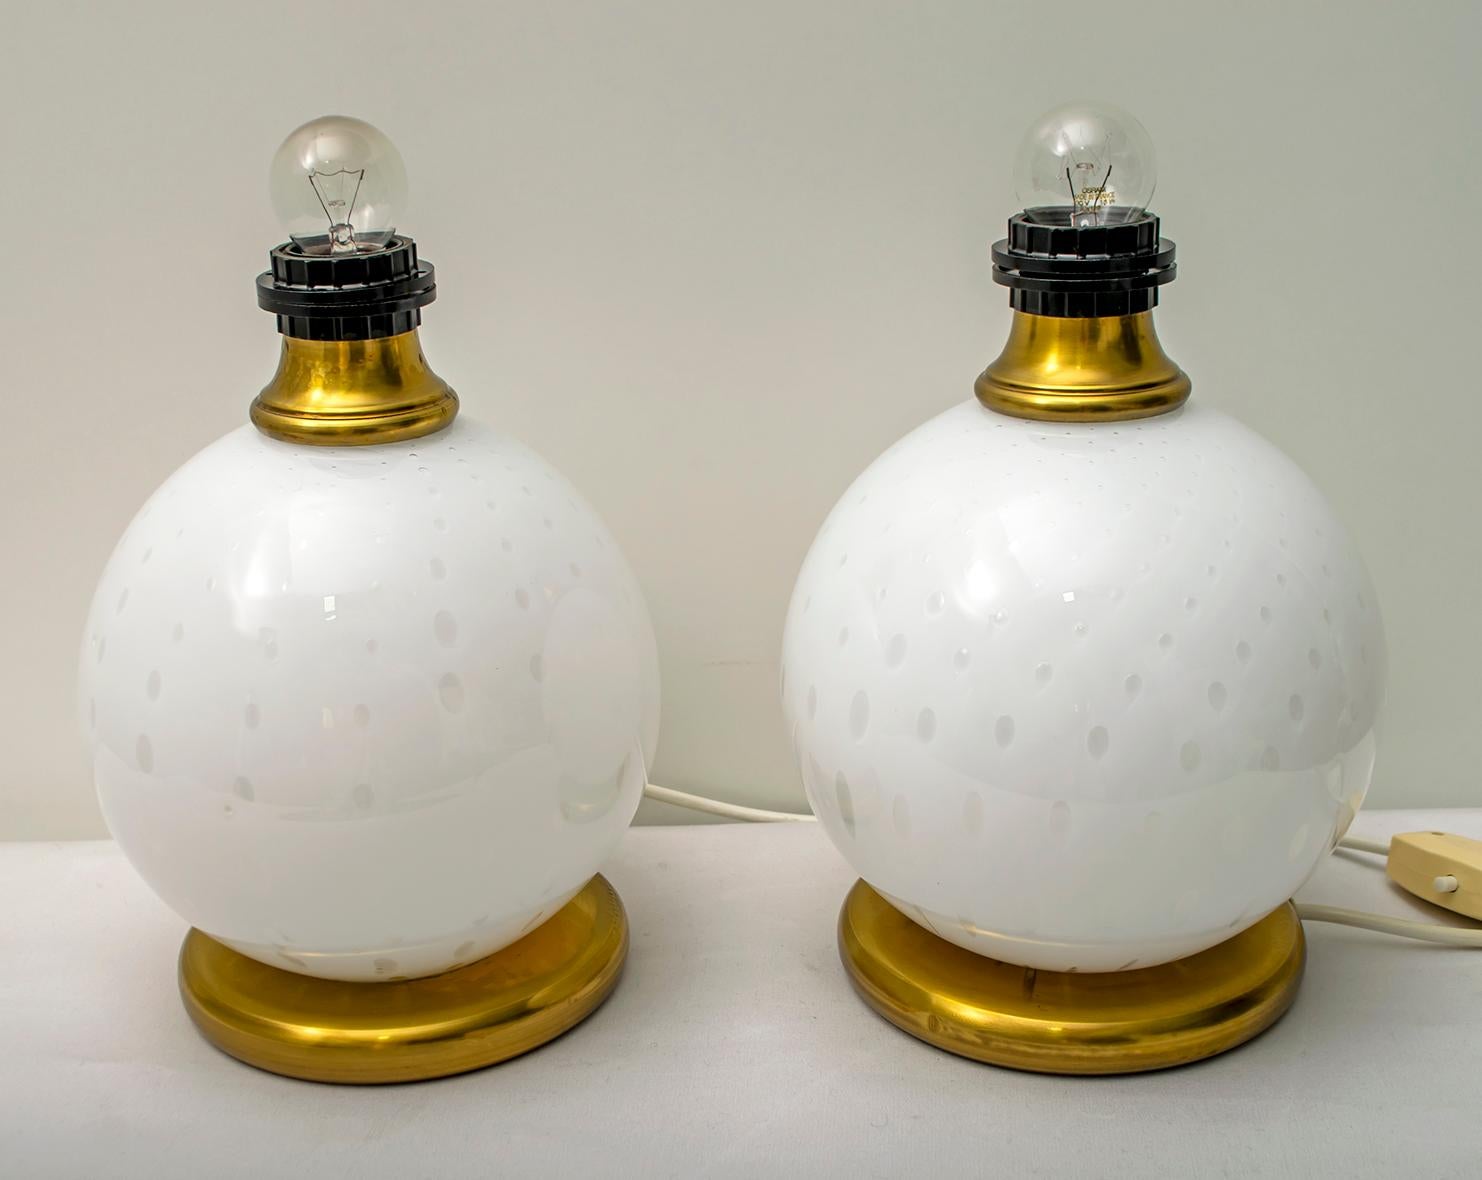 Dieses Lampenpaar wurde von Maestri Muranesi in der Technik des geblasenen Glases mit Luftblasen hergestellt, die beiden Stützen sind aus Messing, es gibt keine Lampenschirme (wie auf dem Foto). Italien, 1970er Jahre.
